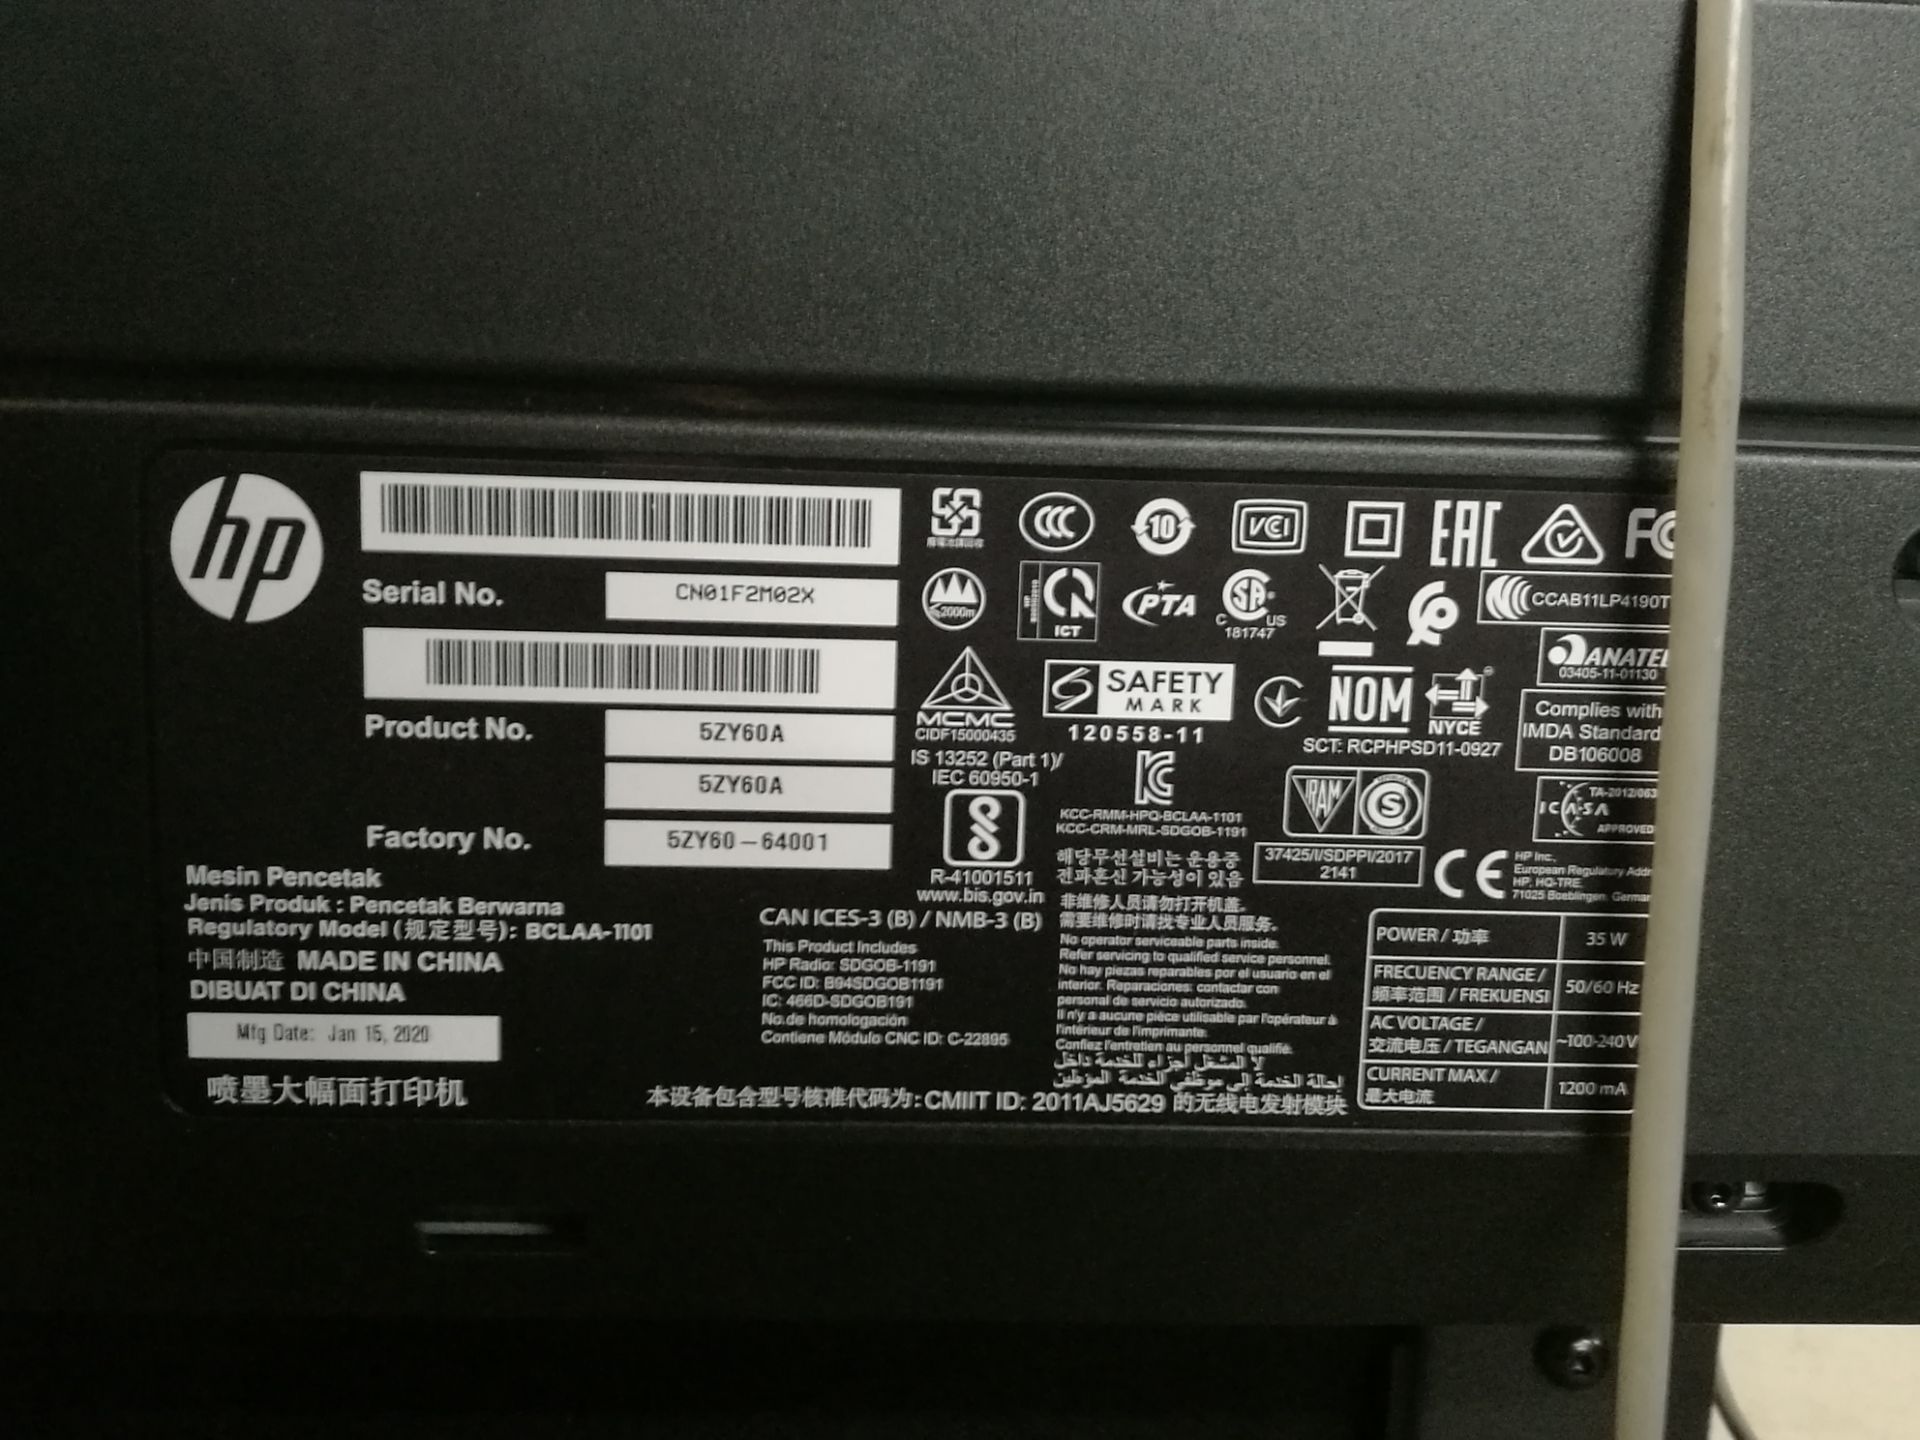 HP DesignJet T530 Plan Printer - Bild 5 aus 5